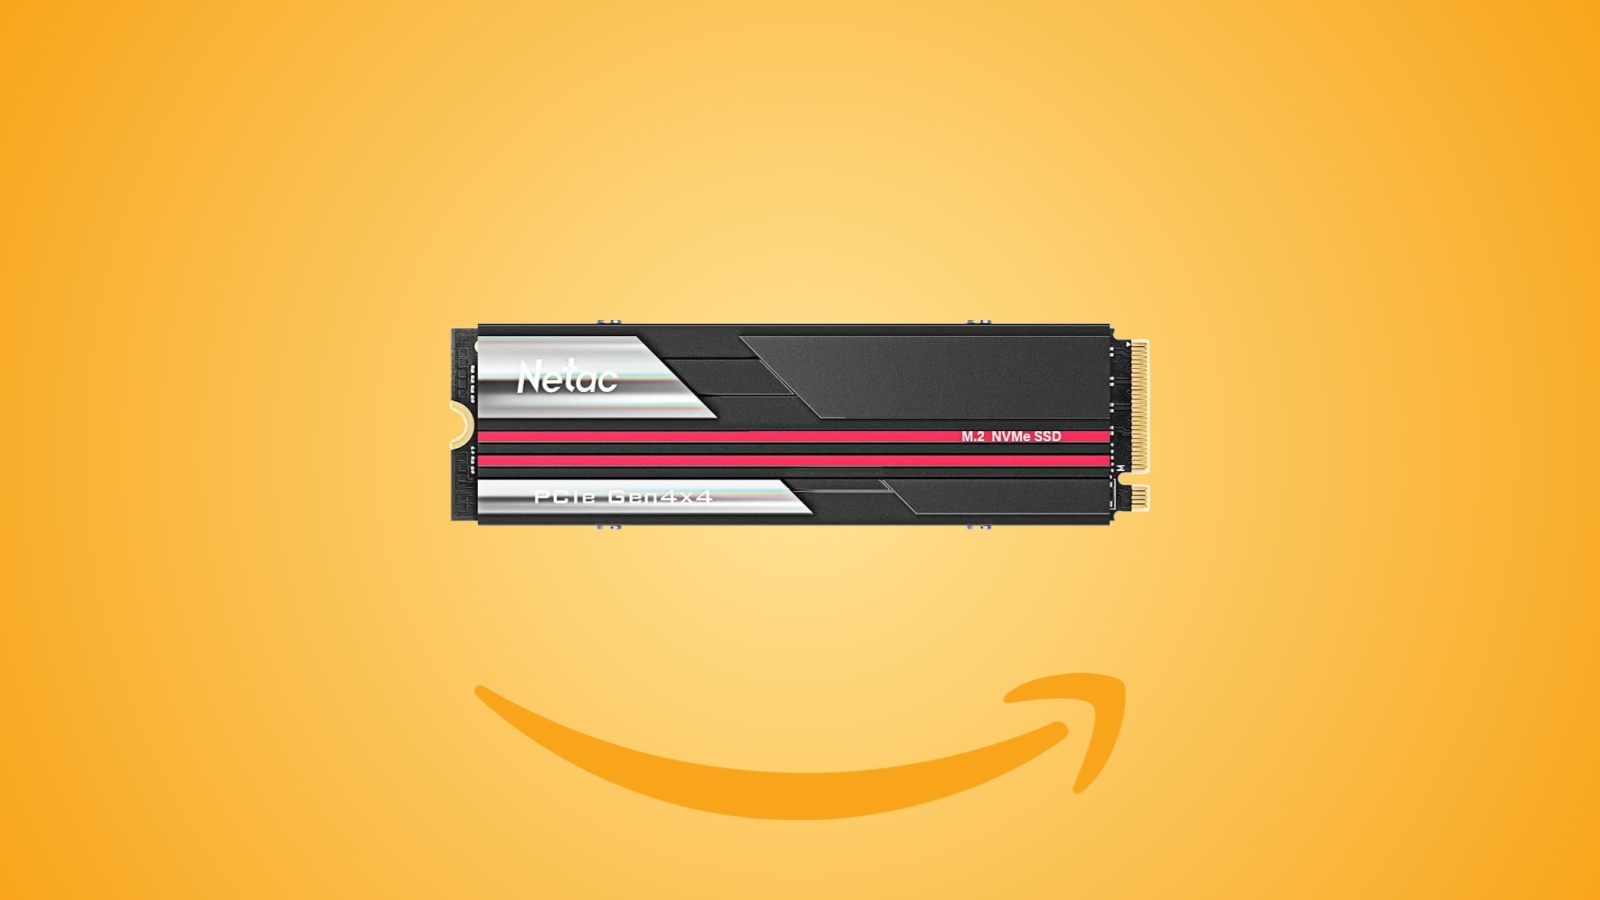 Offerte Amazon: SSD Netac NV7000 da 1 TB con dissipatore per PS5 e PC al prezzo minimo con coupon